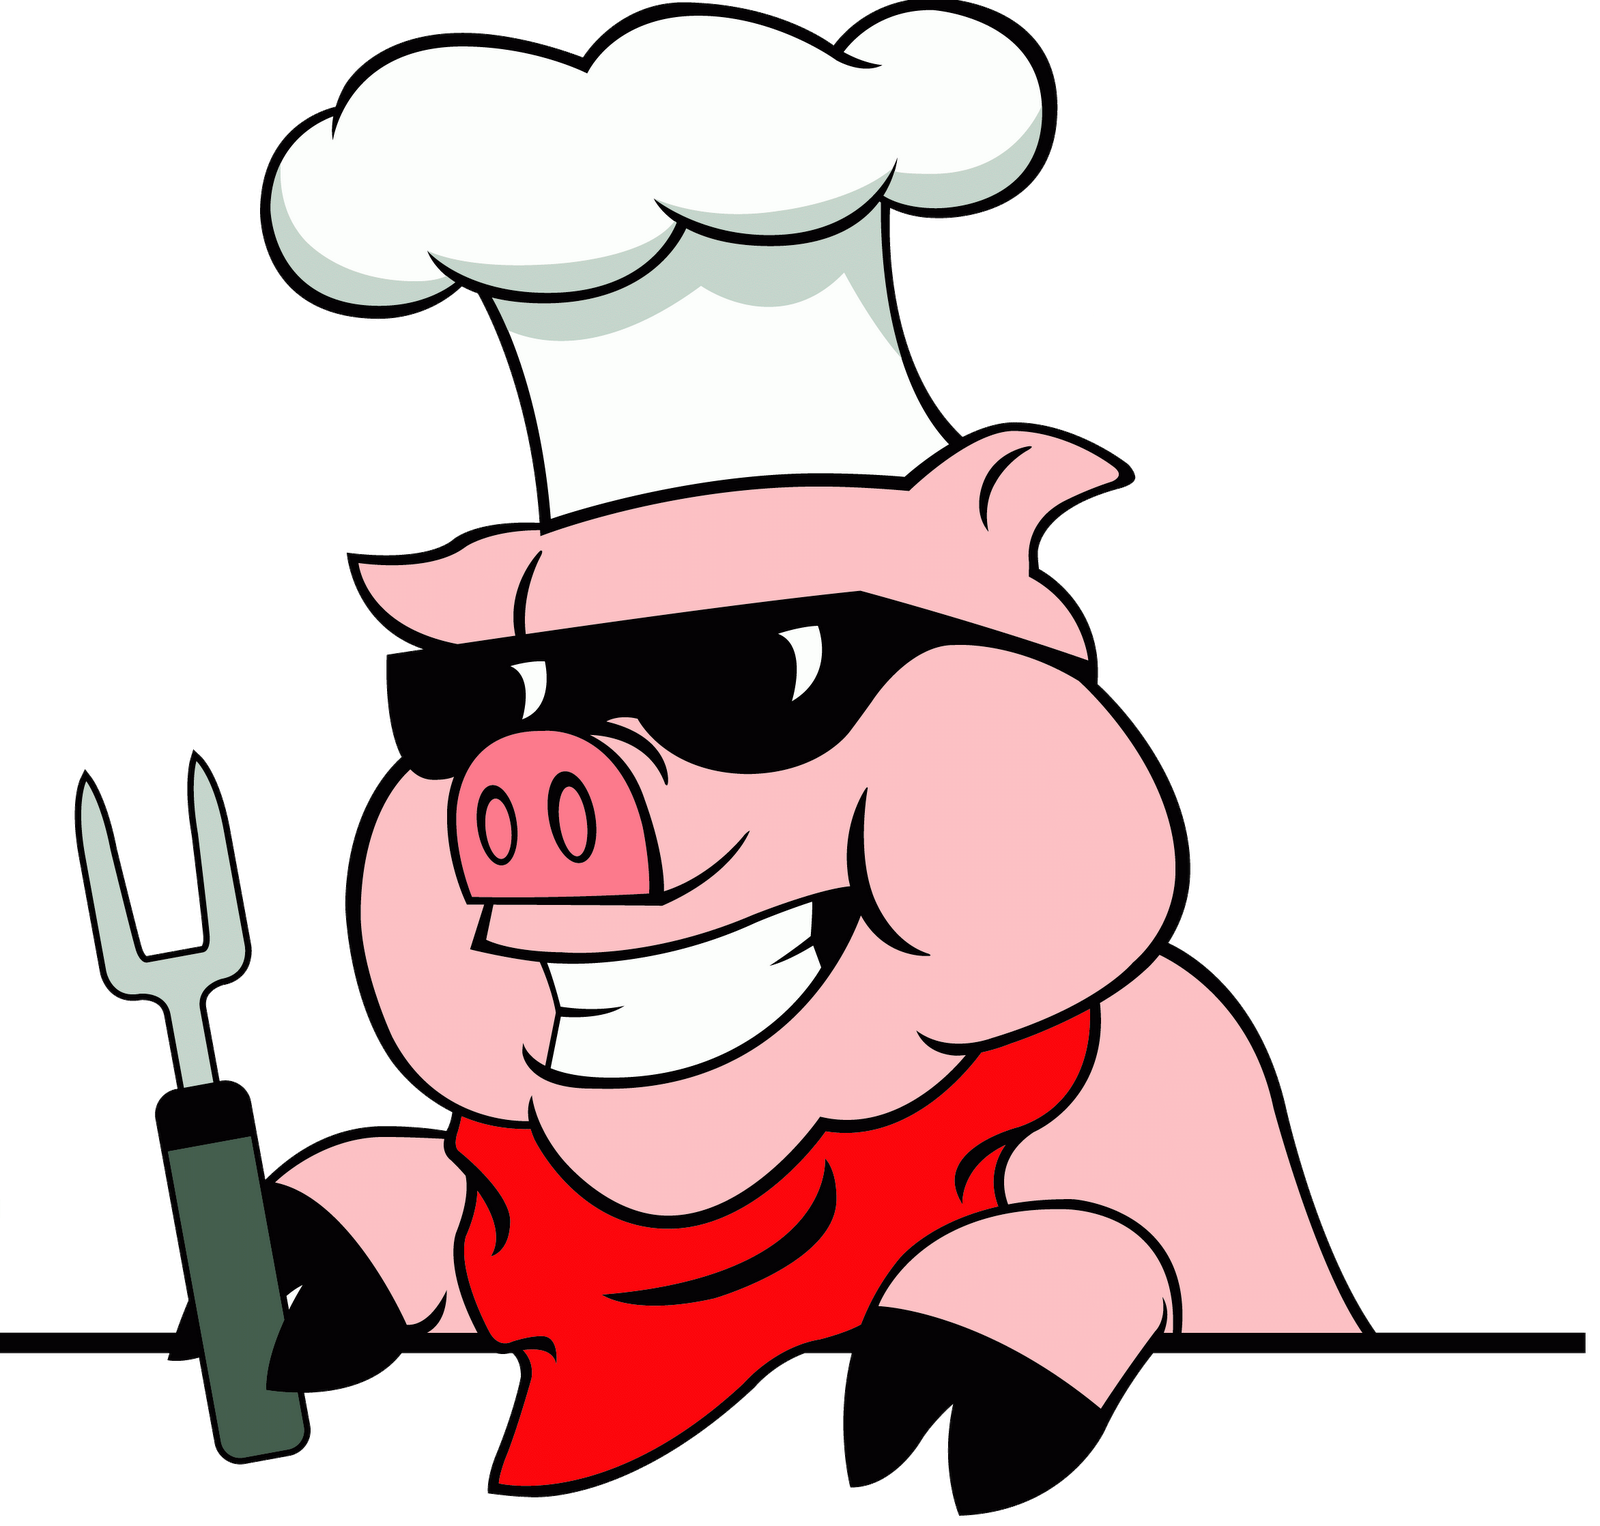 Bbq Pig Logo - ClipArt Best